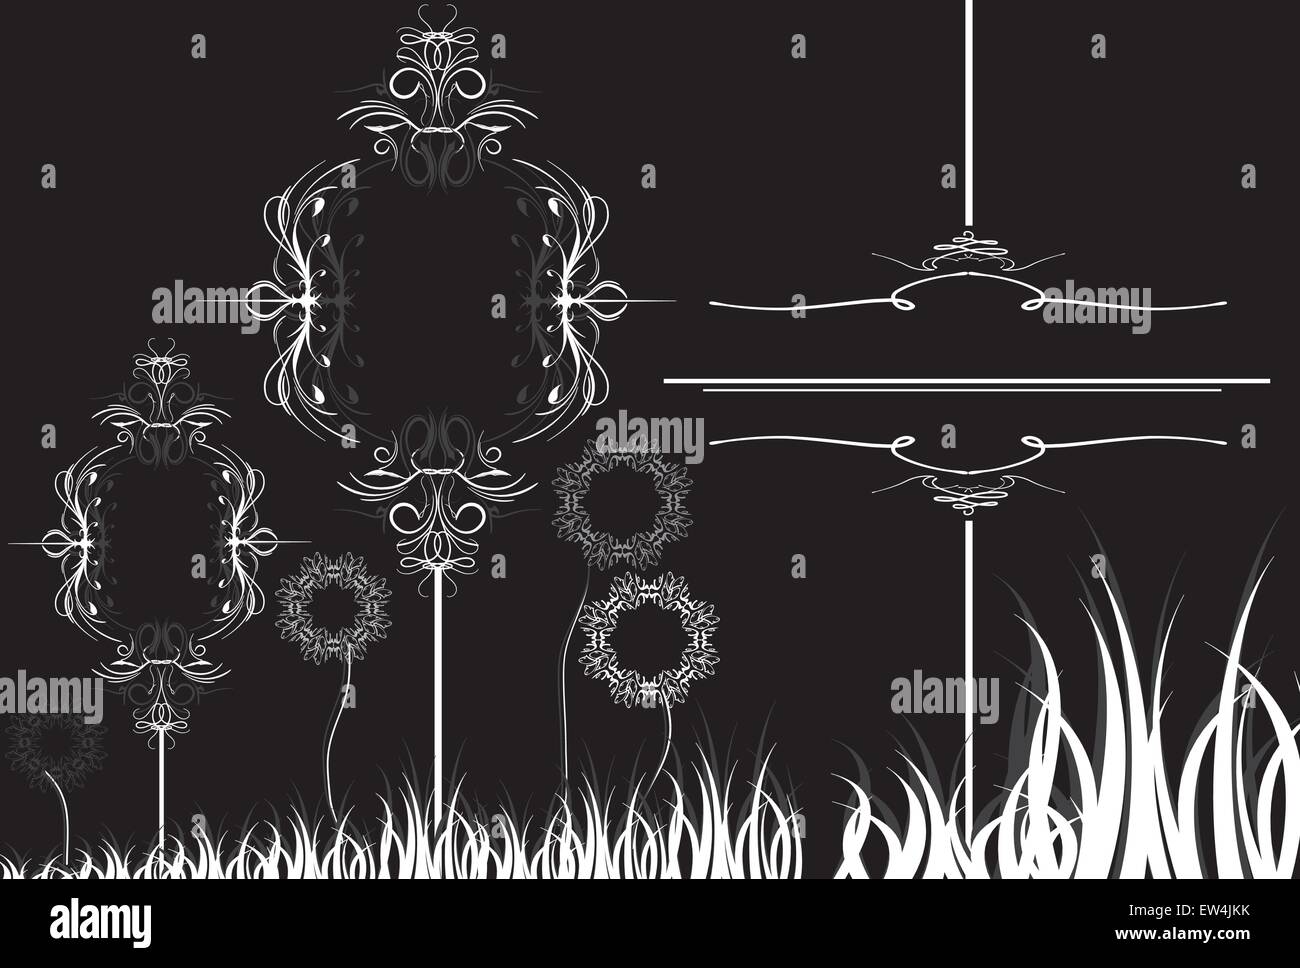 Tarjeta de invitación Vintage Retro elegante adornados con diseño floral abstracto, gris y blanco de las flores y hojas de hierba backg negro Ilustración del Vector